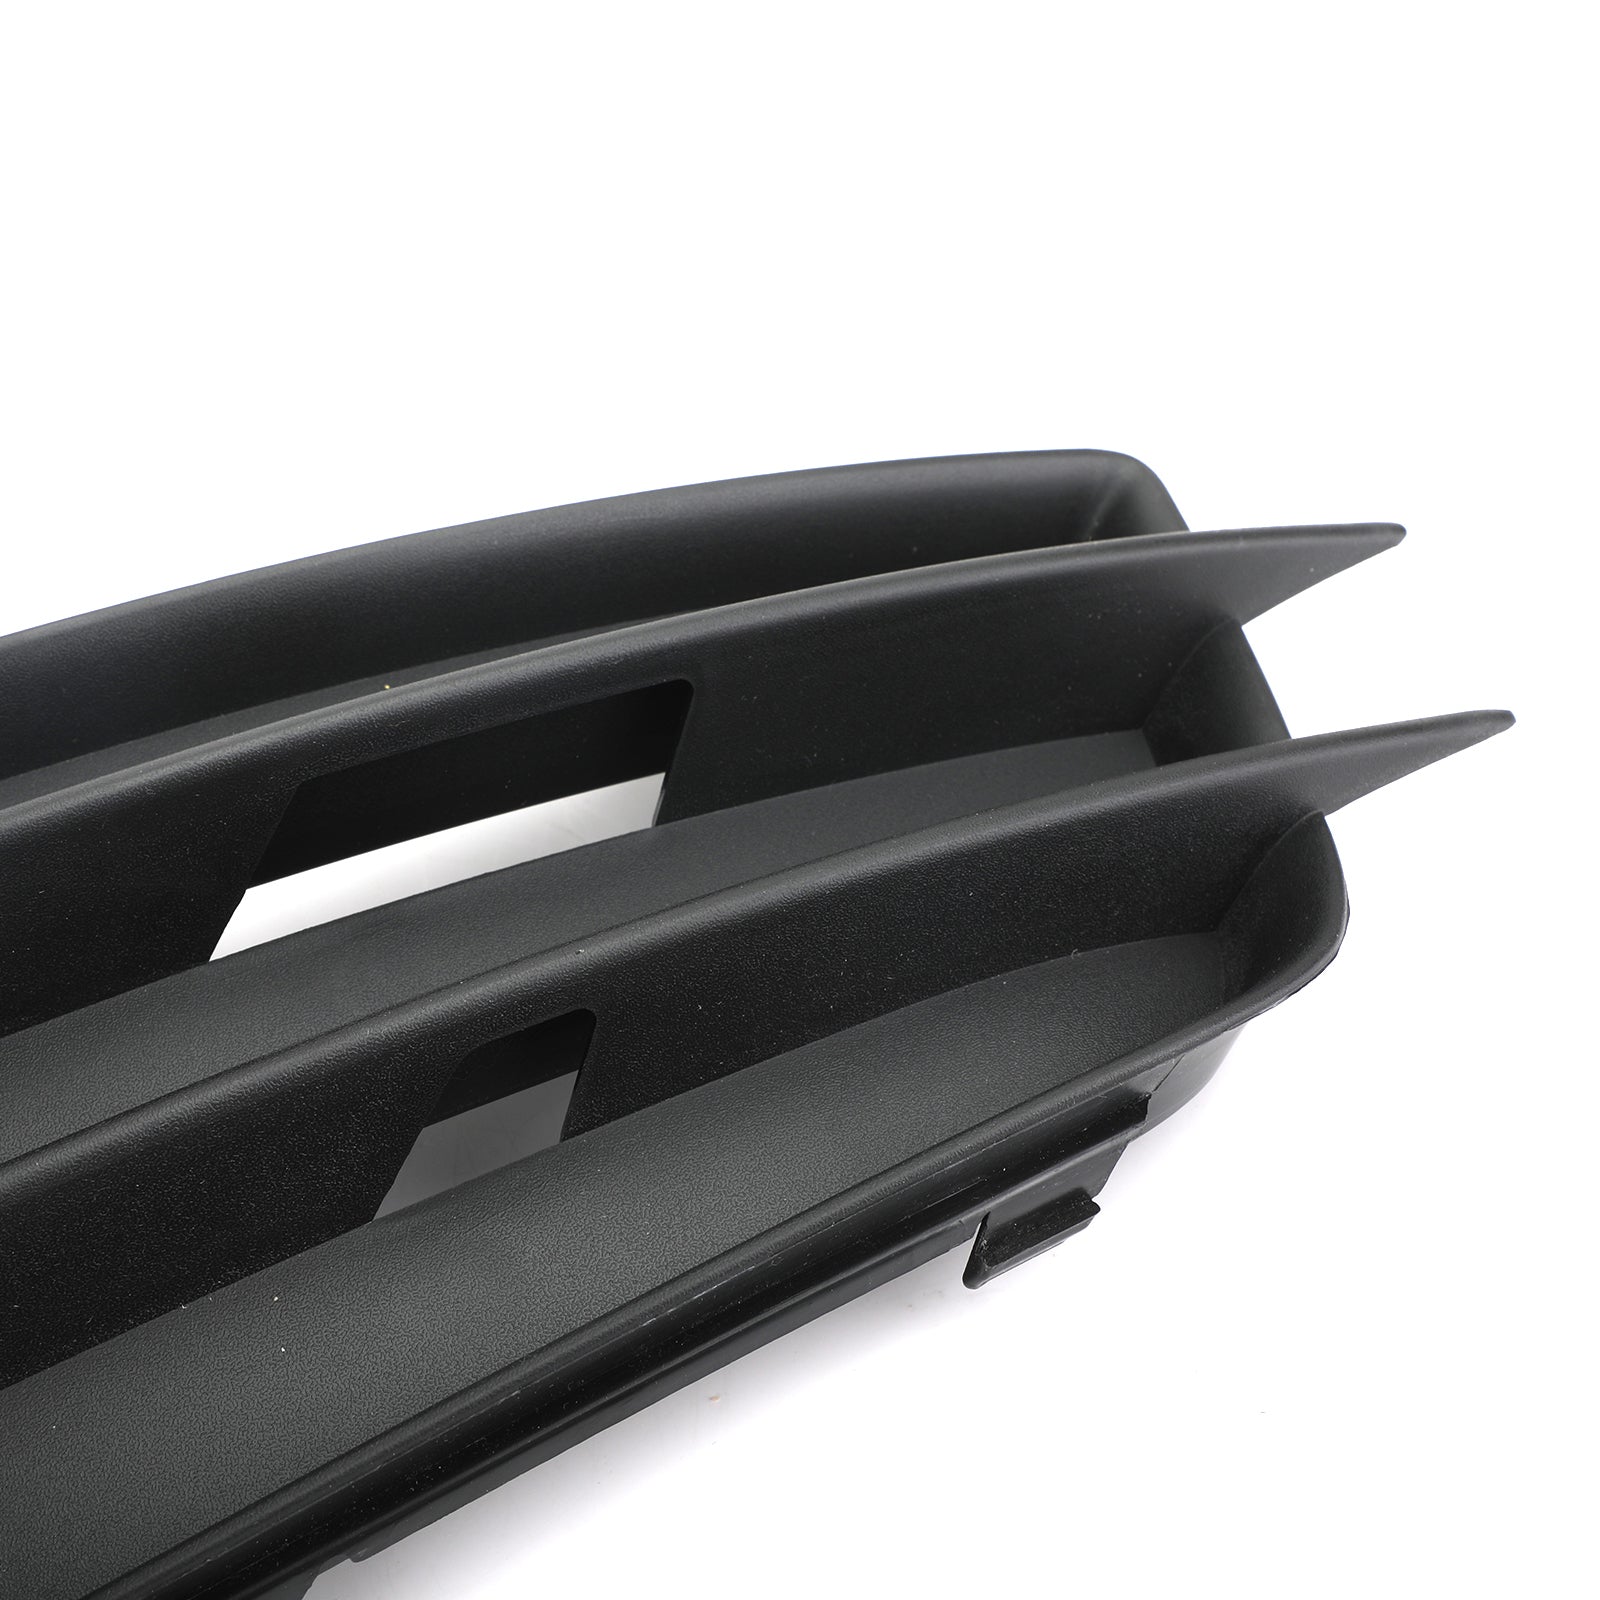 Parachoques de línea S de rejilla de luz antiniebla negra mate lateral izquierdo para AUDI A4 B8 2008-2012 genérico